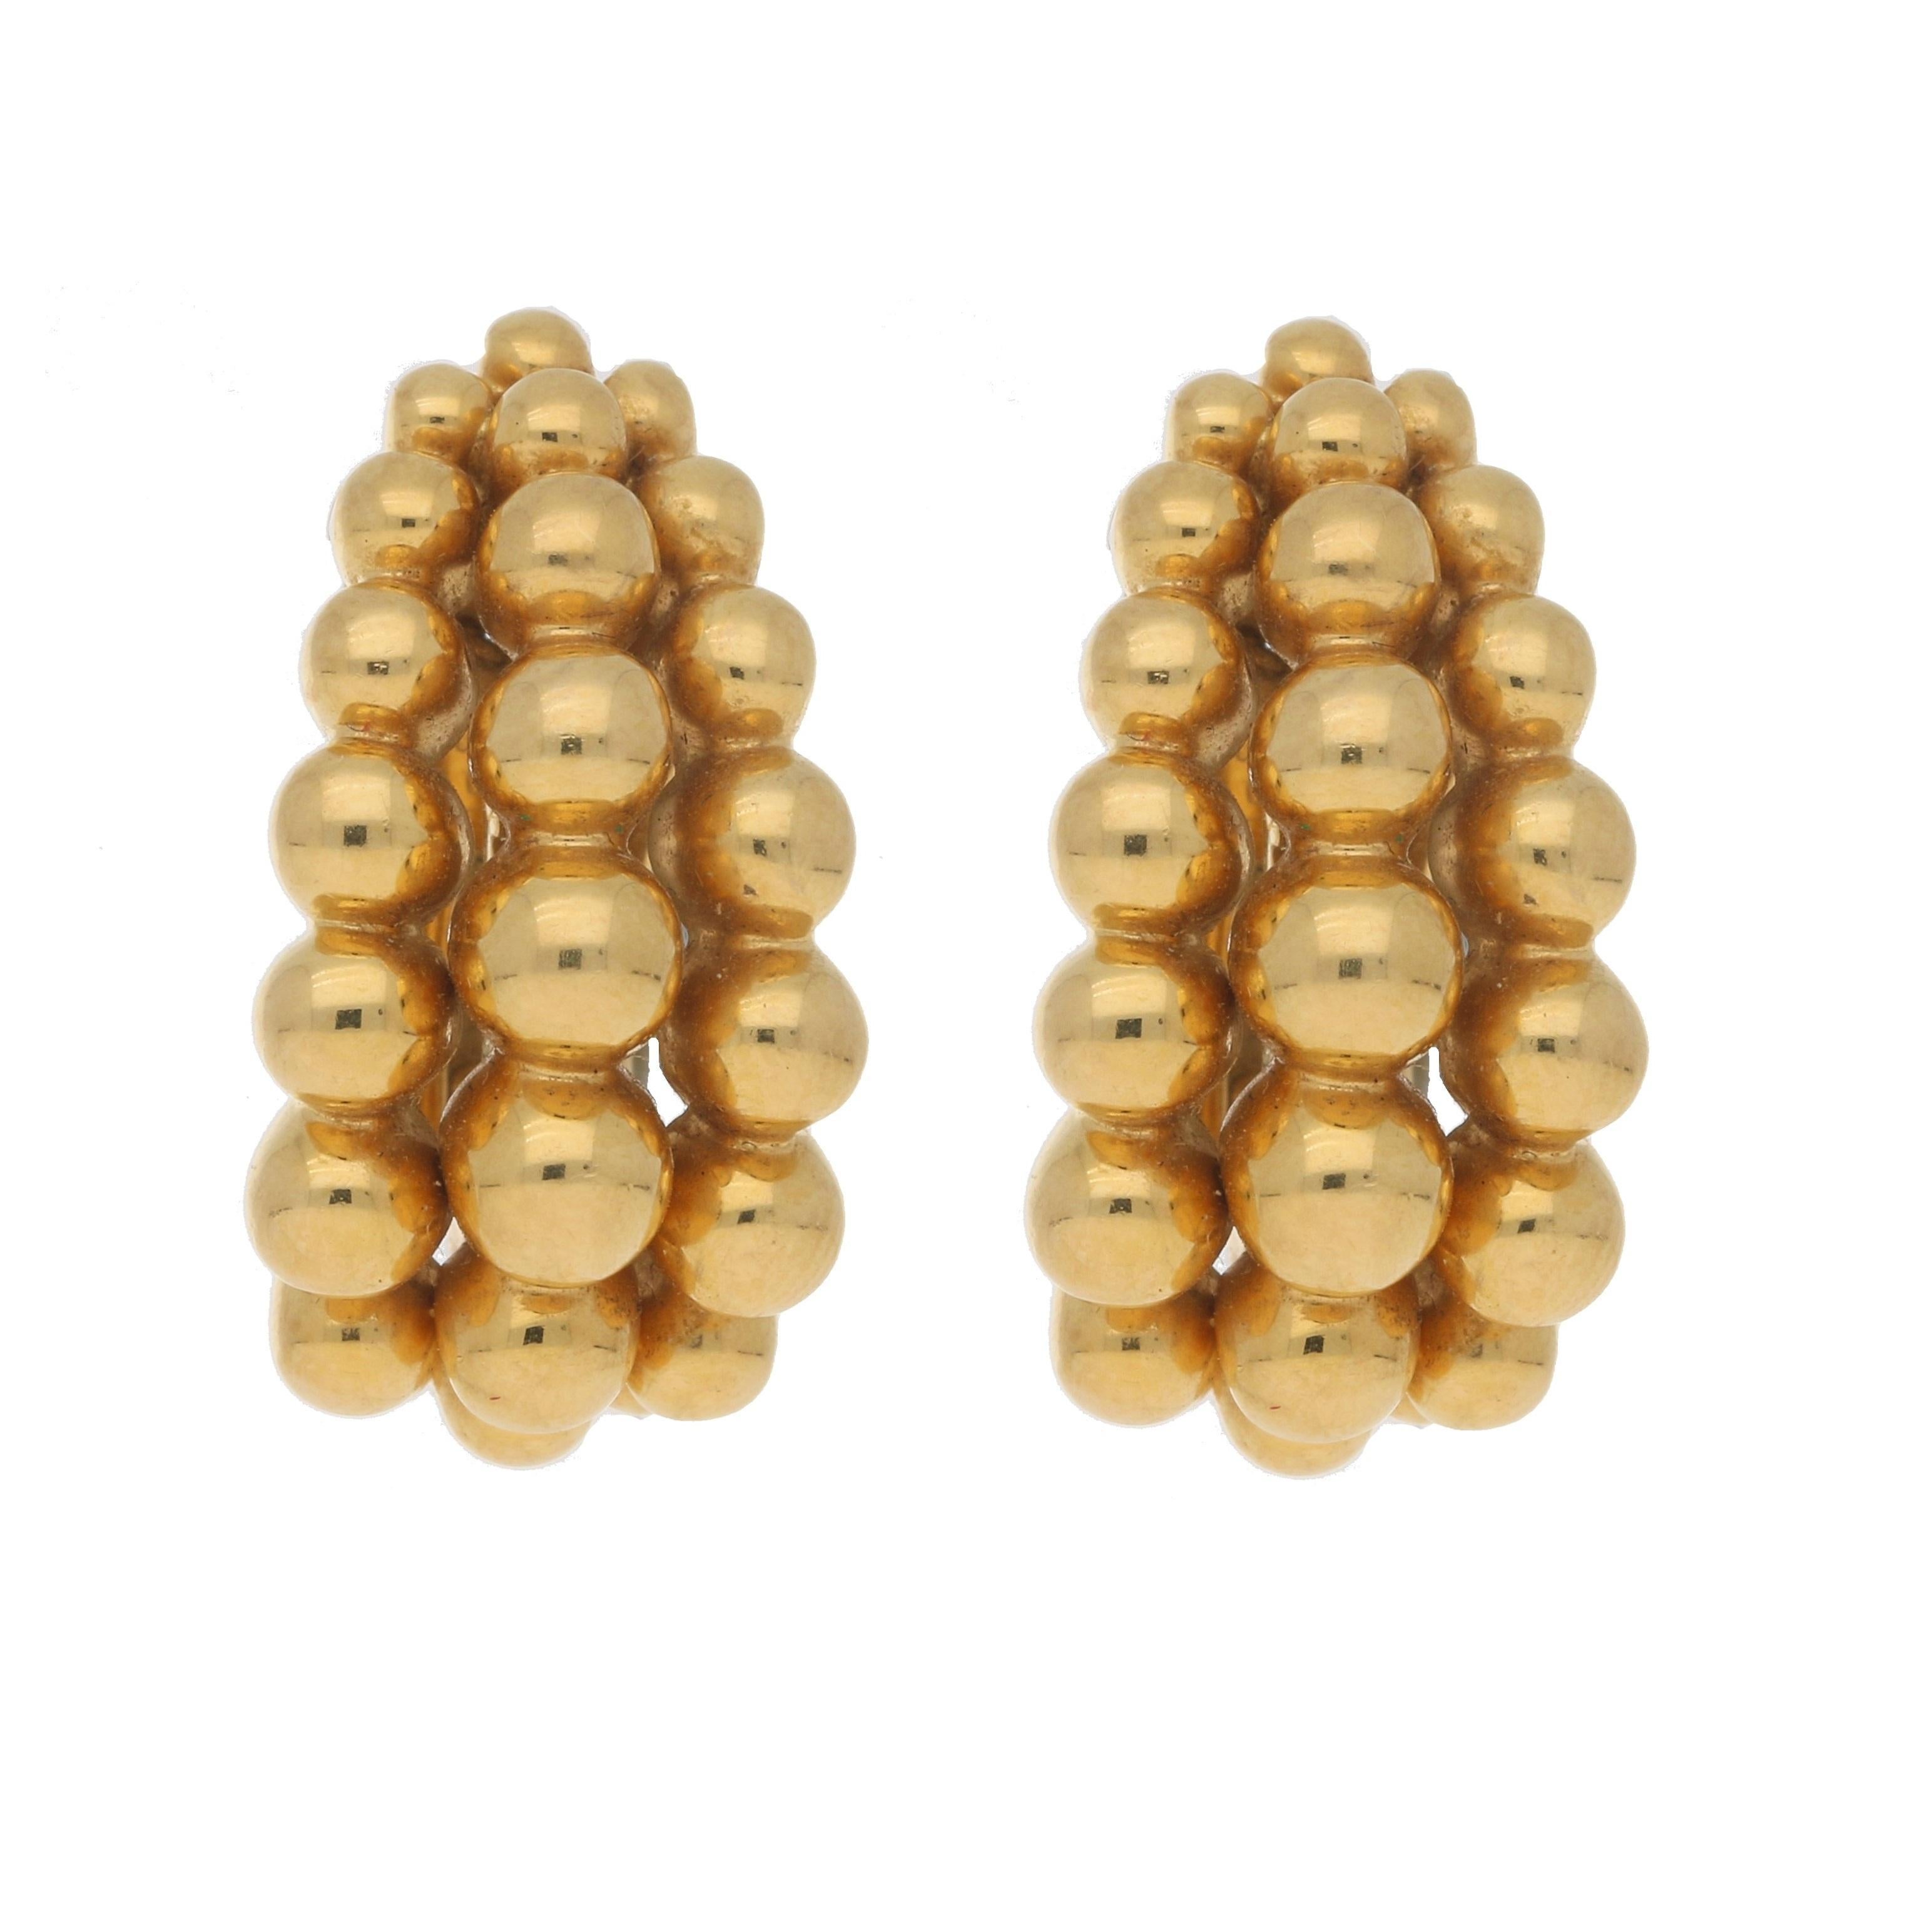 Boucheron 'Grains de Raisin' Bubble Earrings Set in 18k Yellow Gold